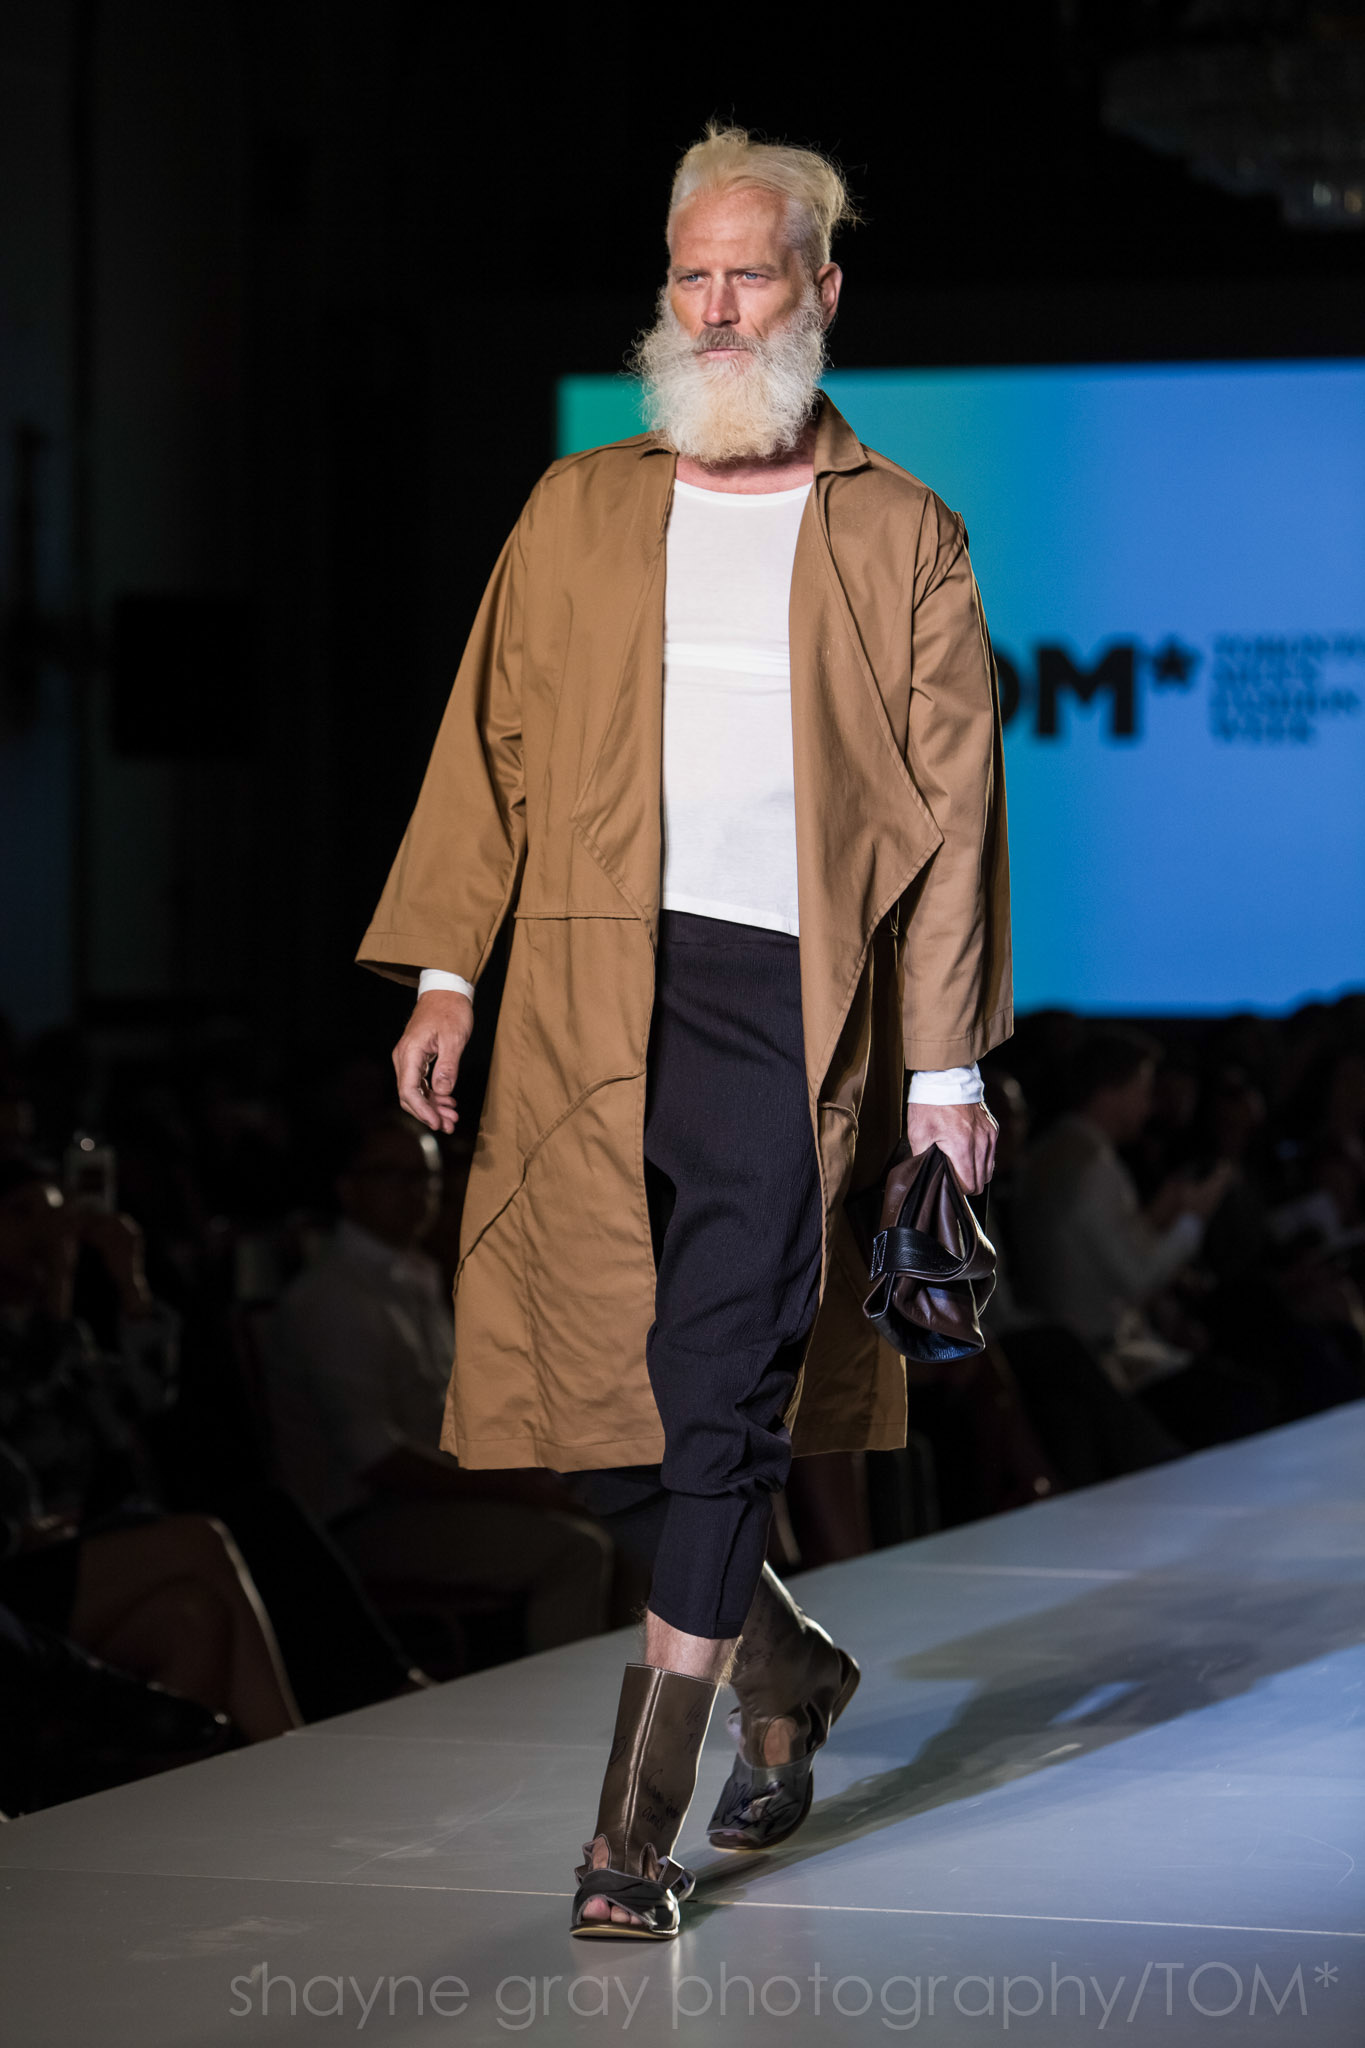 Shayne-Gray-Toronto-men's-fashion_week-TOM-jose-duran-7676.jpg